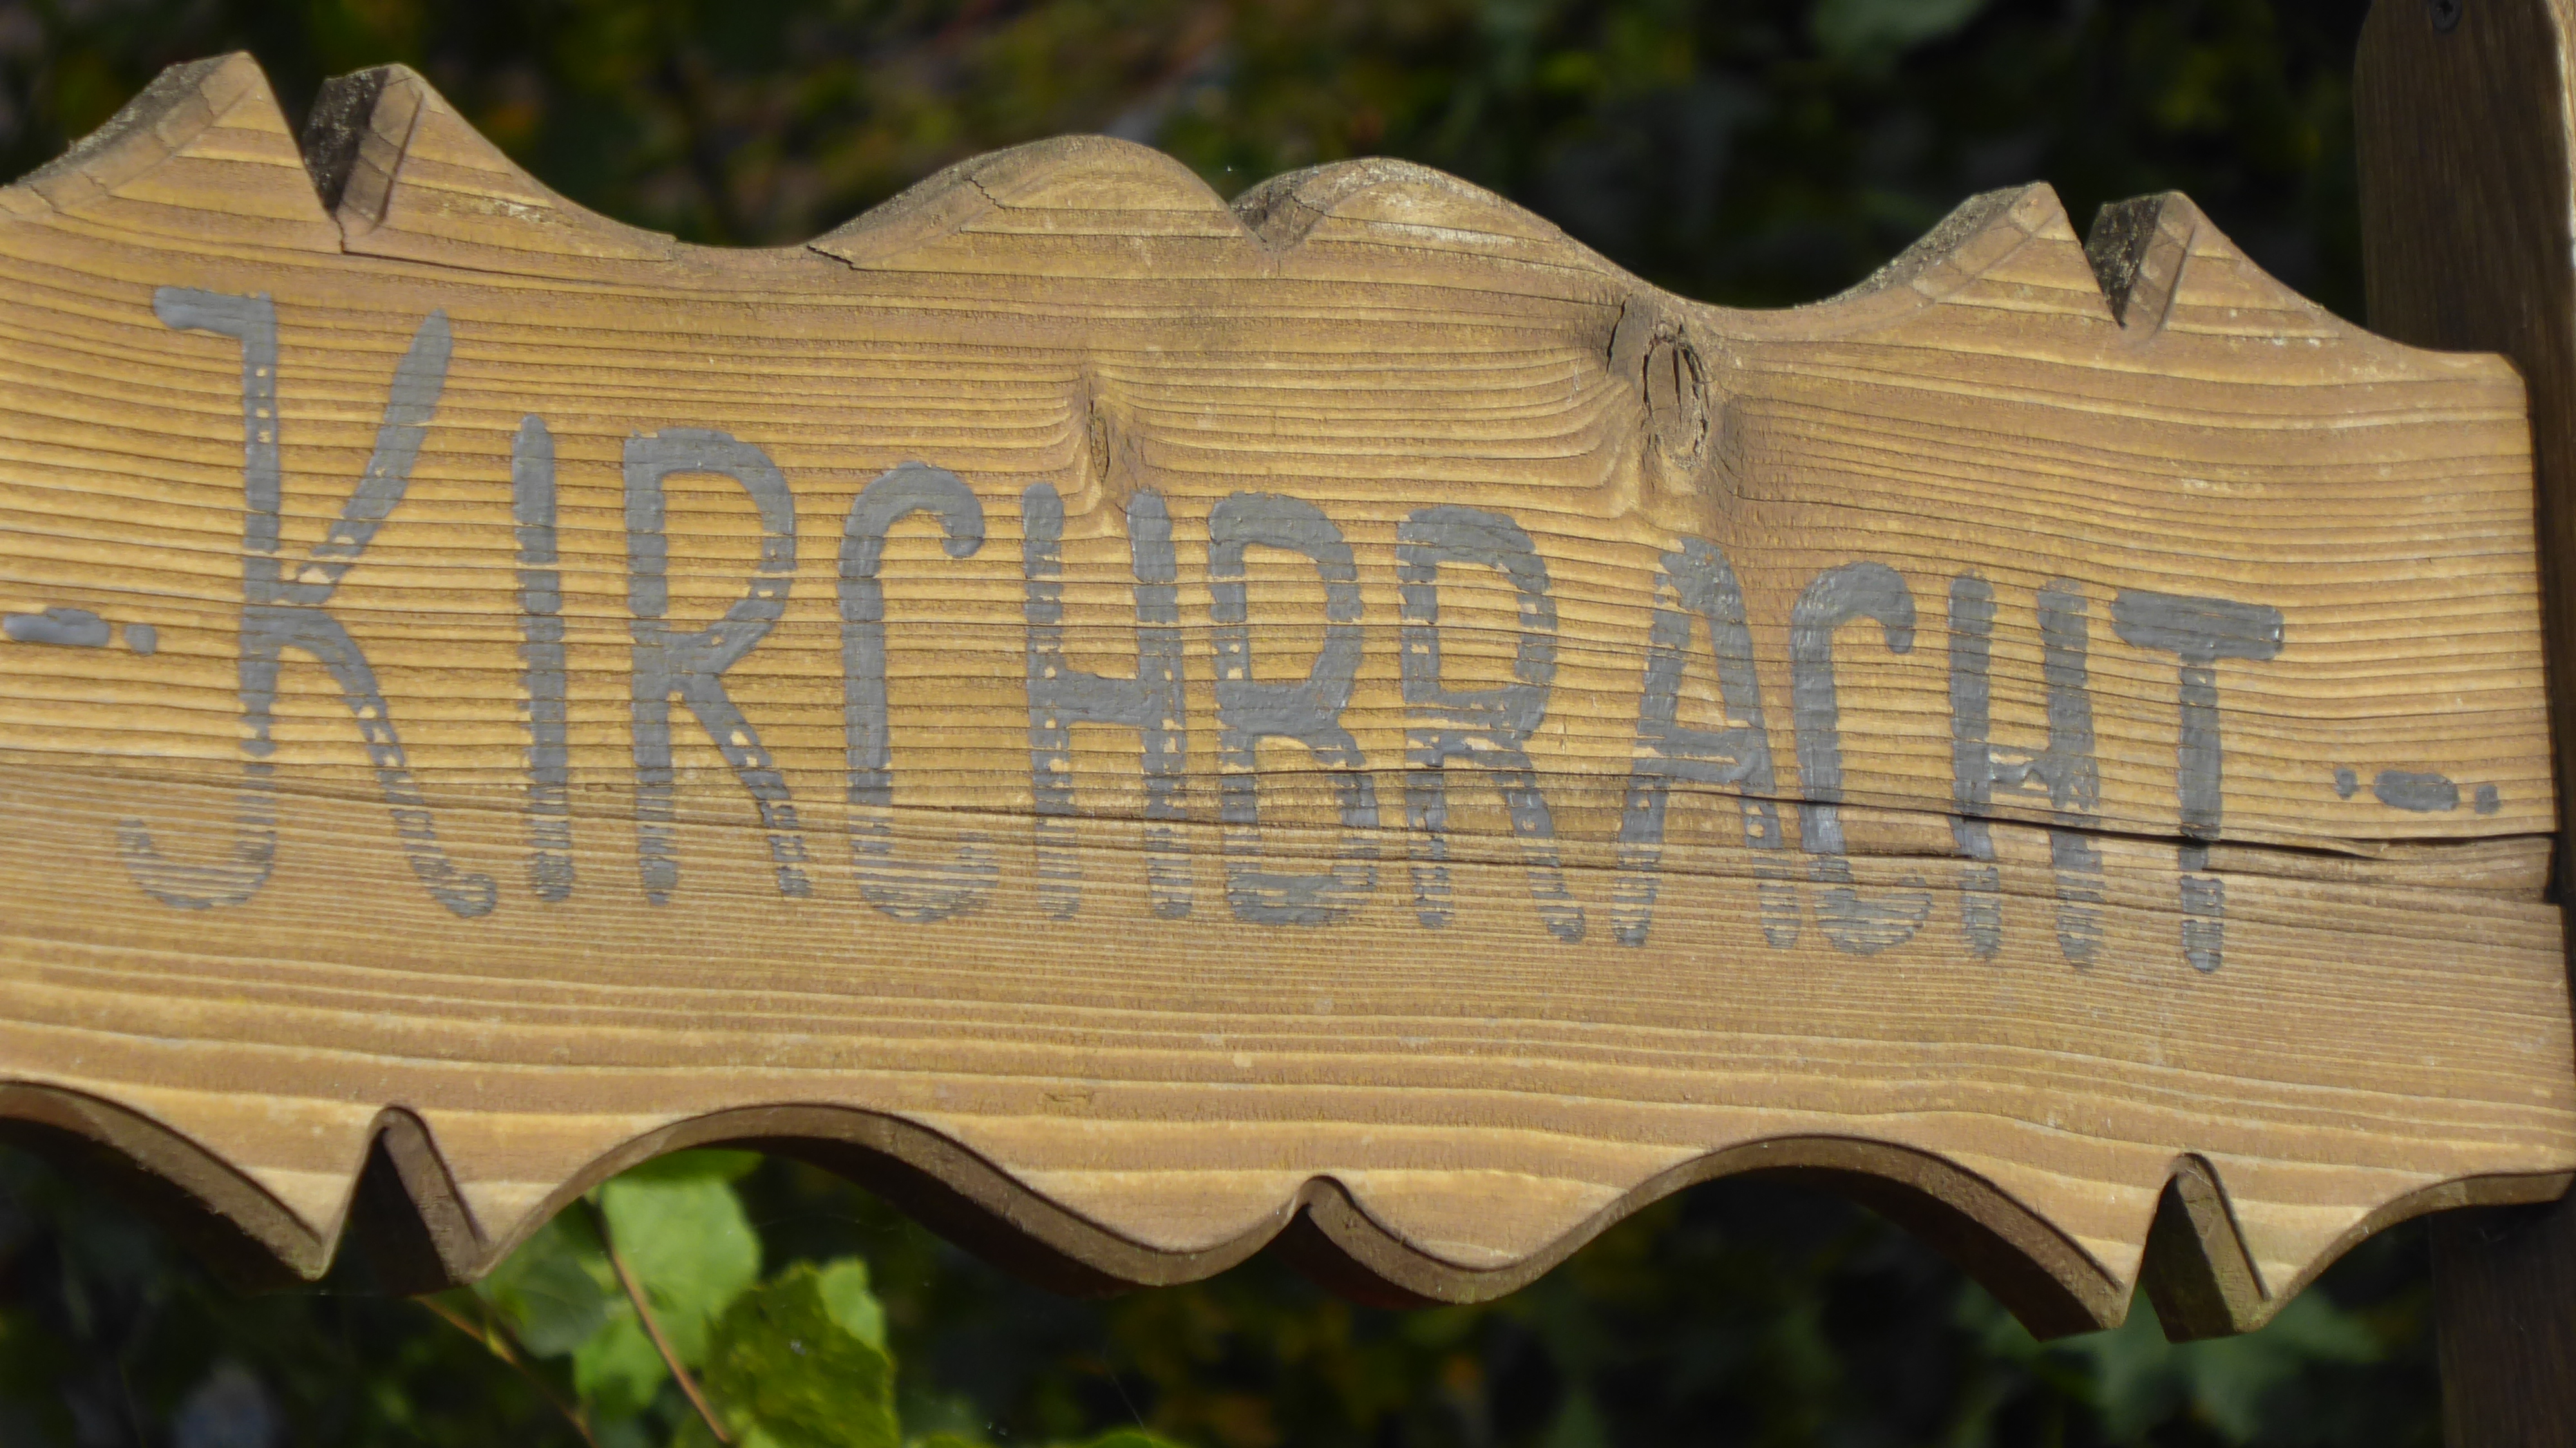 Kirchbracht sign 2016. Courtesy of Roger Burbank.